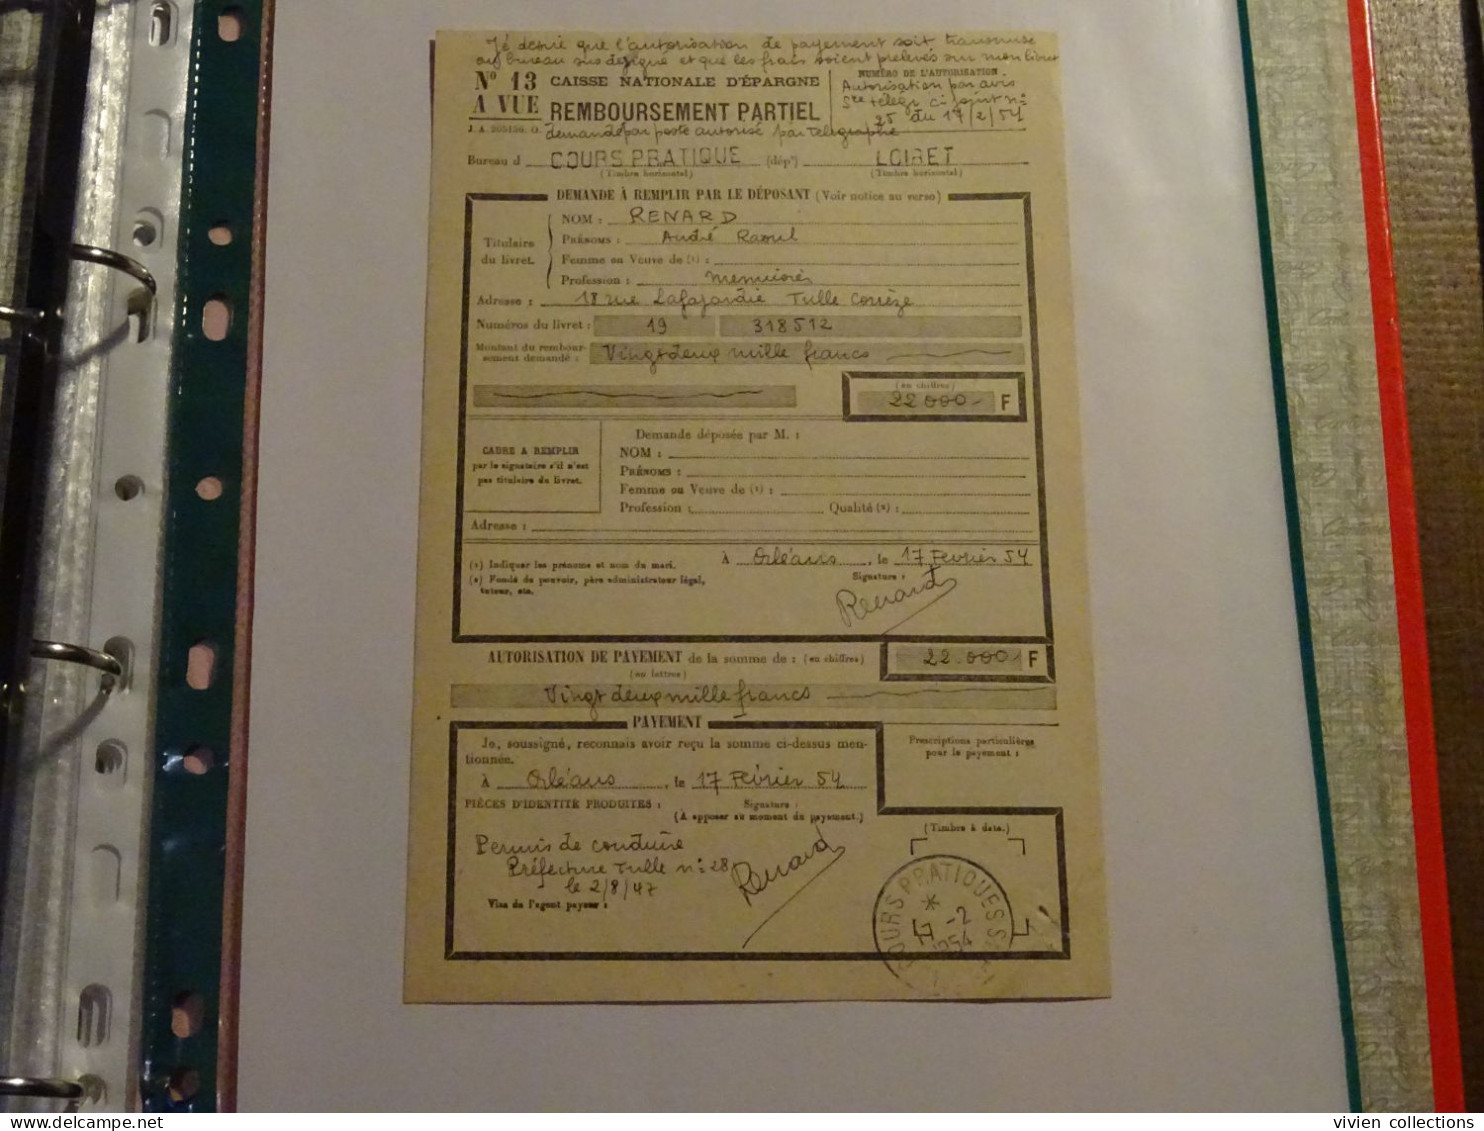 France Cours Pratique D'instruction Orléans 1954 Télégramme Remboursement A Vue Partiel CNE M. Renard Menuisier à Tulle - Instructional Courses